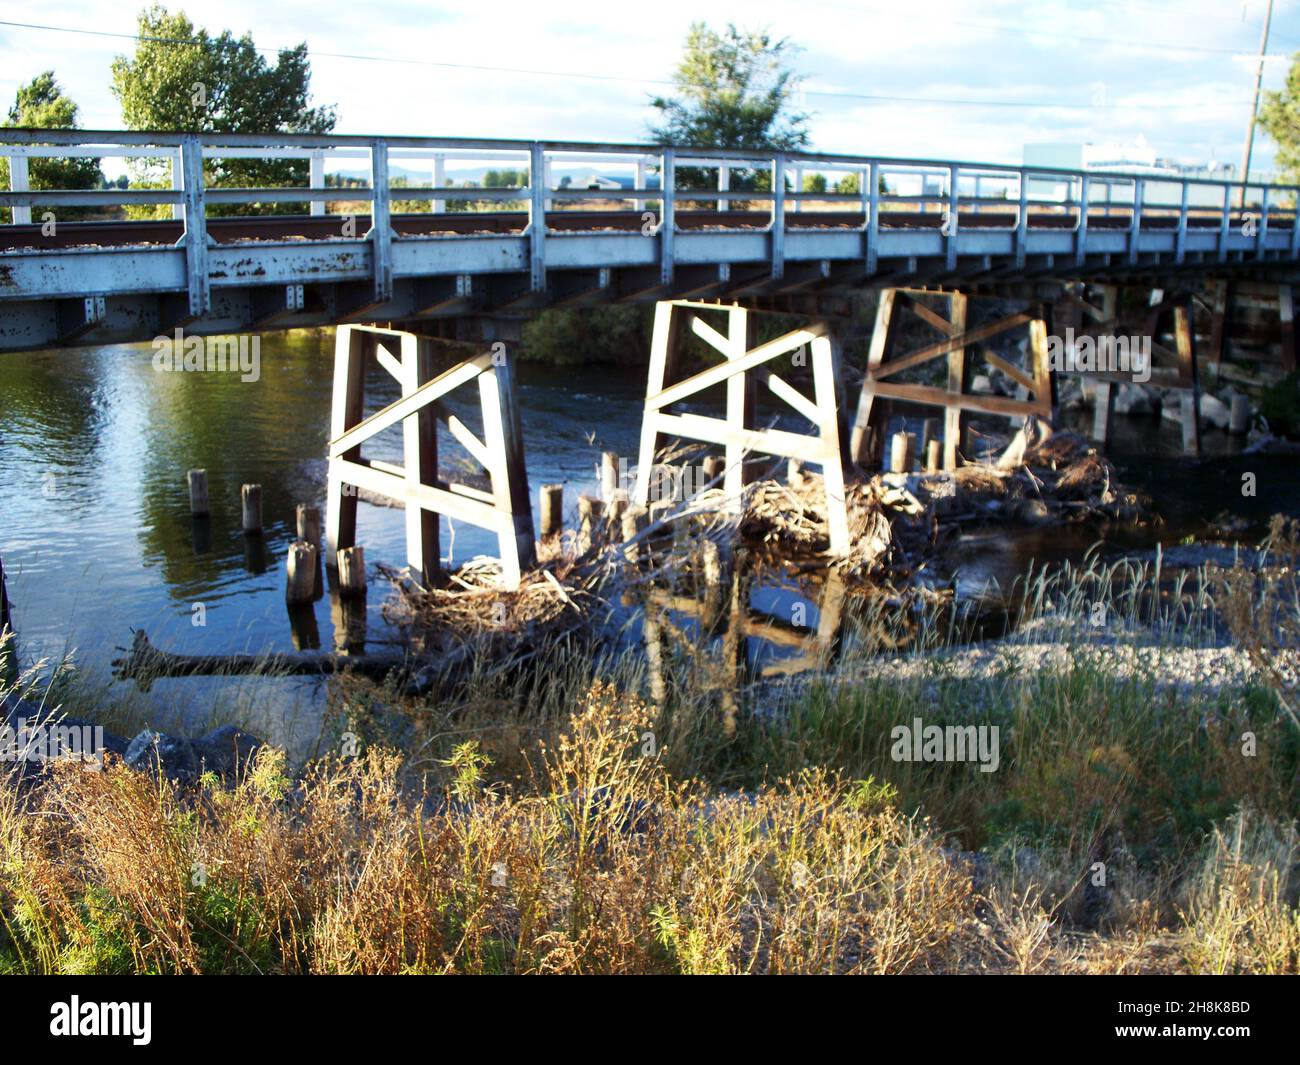 El viejo puente de madera se extiende sobre un pequeño estanque con el sol en el lado izquierdo de la foto. Foto de stock